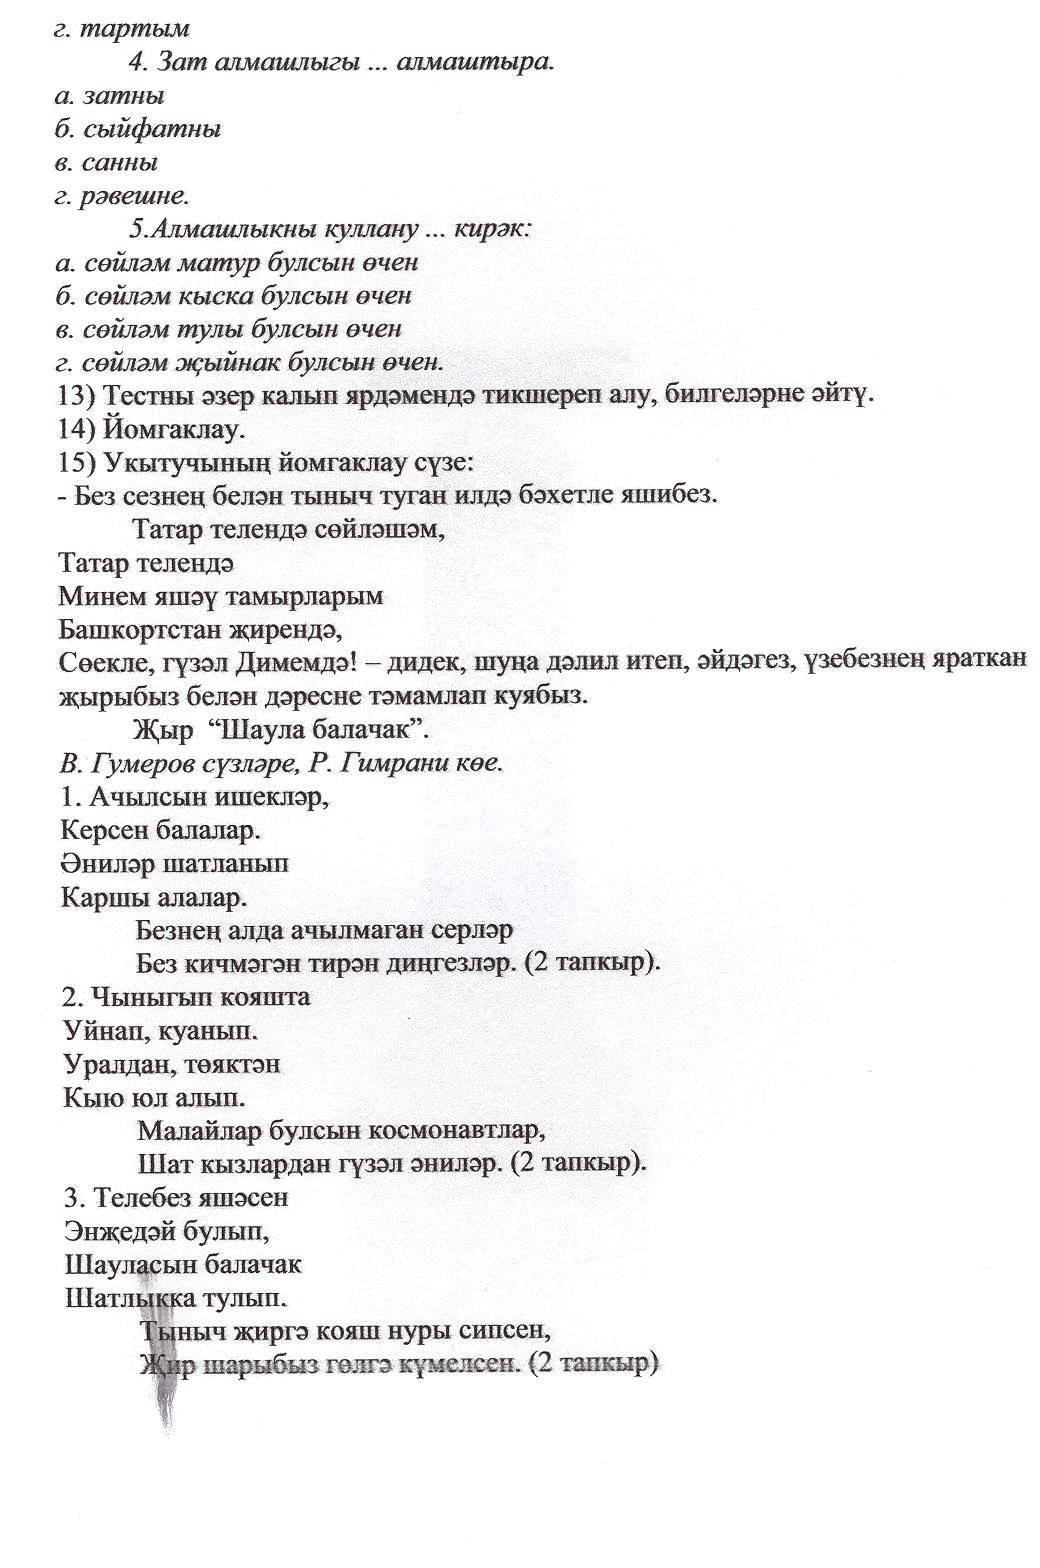 Конспект урока по татарскому языку Местоимение (обобщающий урок). 7класс